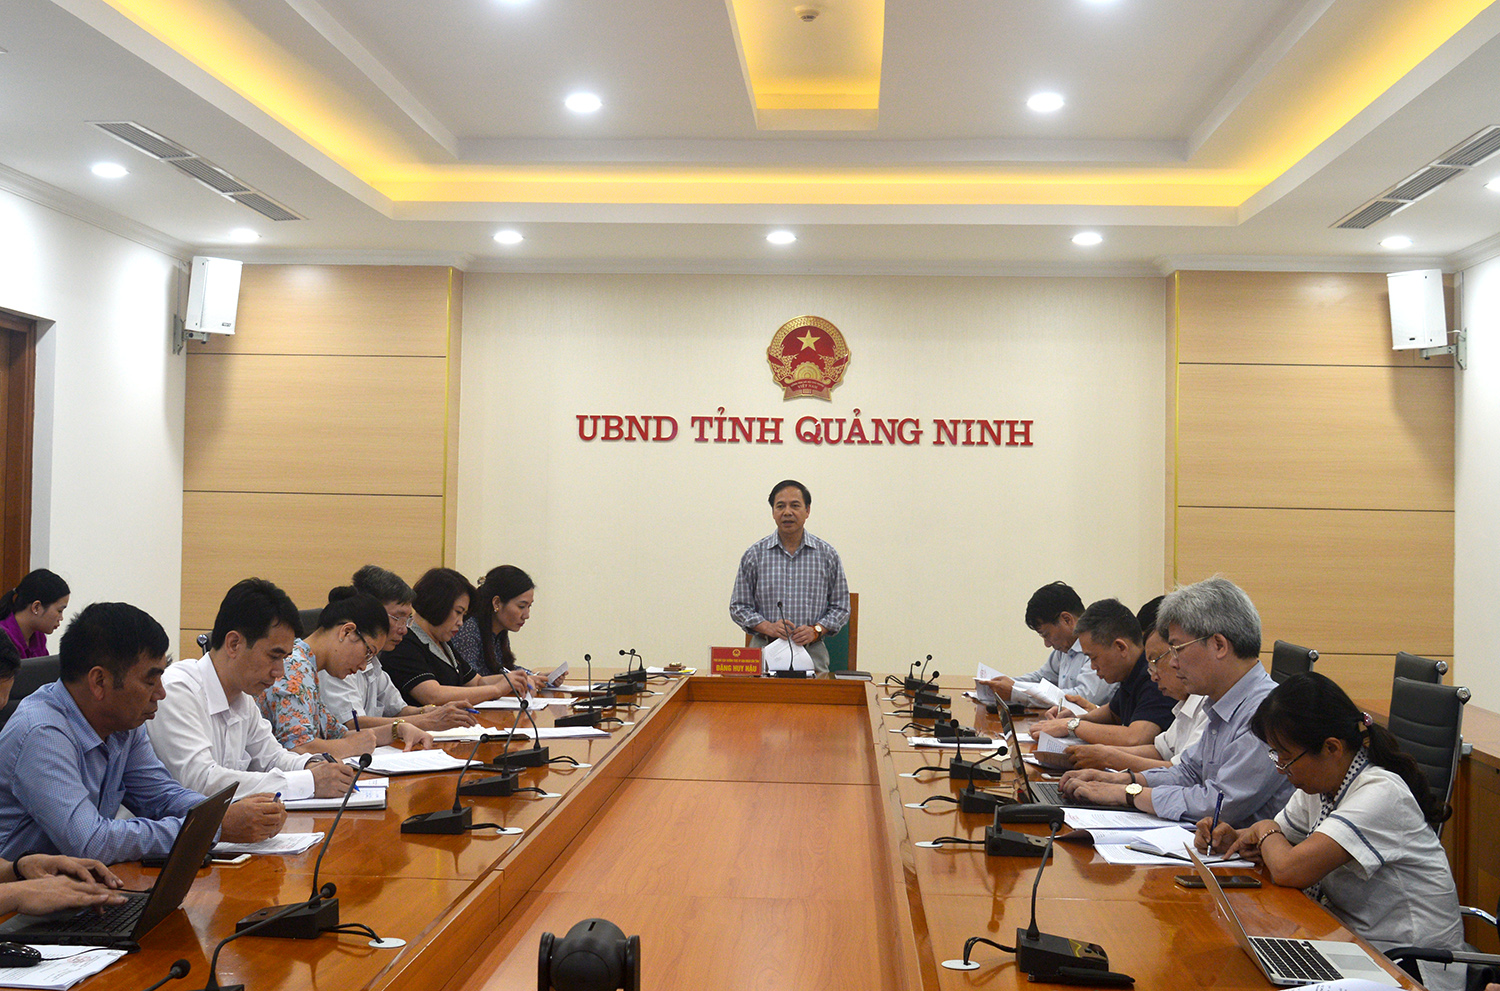 Đồng chí Đặng Huy Hậu phát biểu tại cuộc họp.